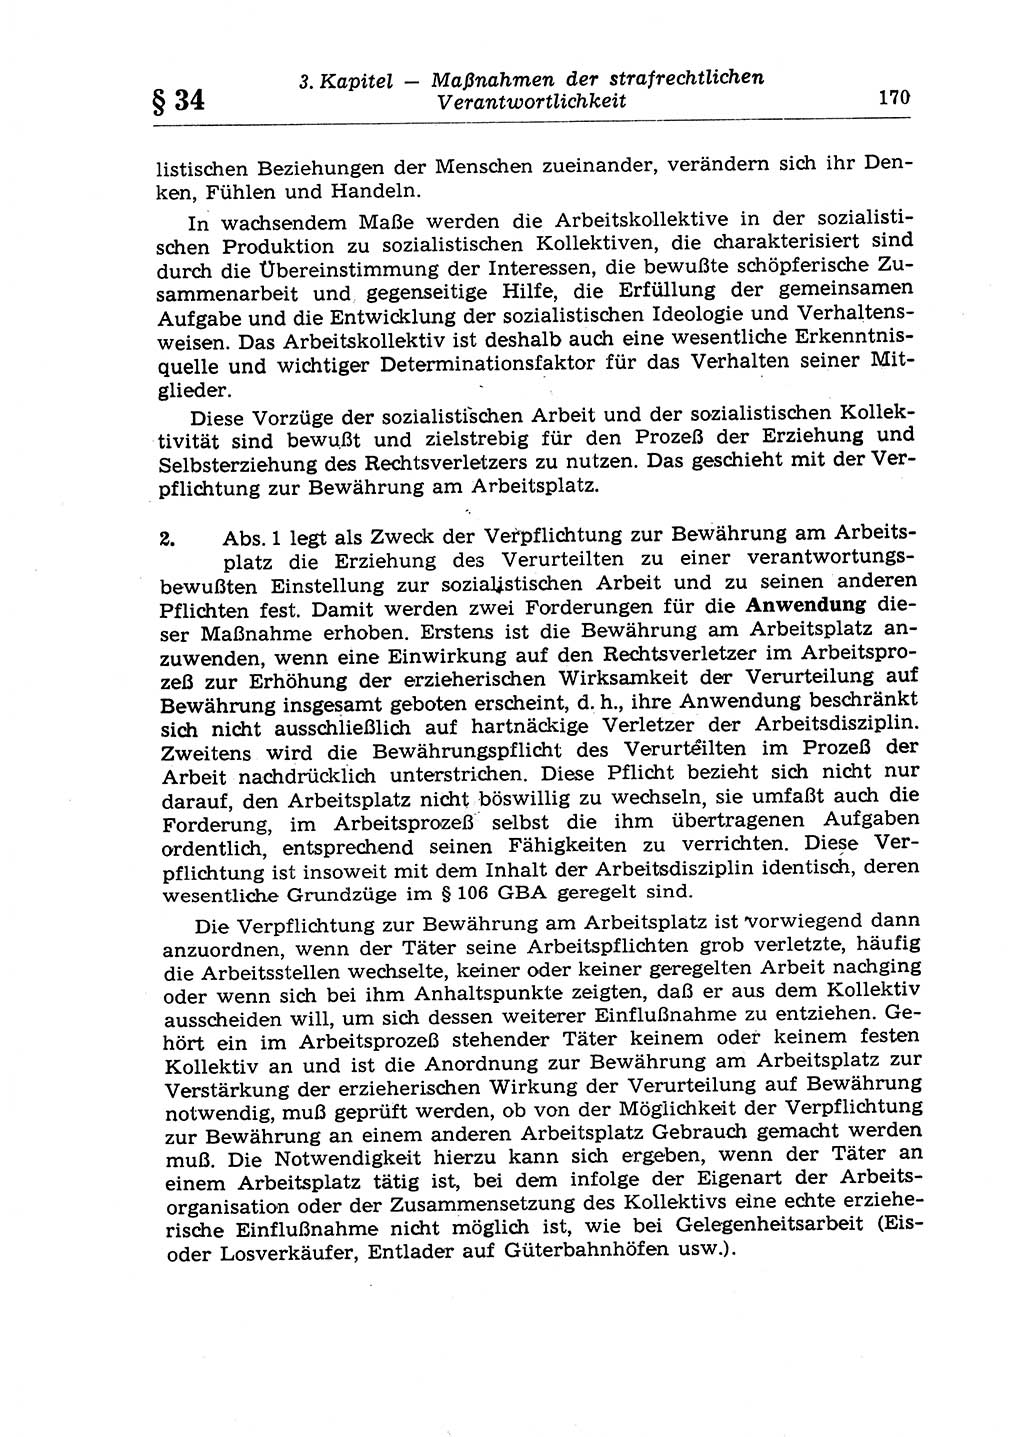 Strafrecht der Deutschen Demokratischen Republik (DDR), Lehrkommentar zum Strafgesetzbuch (StGB), Allgemeiner Teil 1970, Seite 170 (Strafr. DDR Lehrkomm. StGB AT 1970, S. 170)